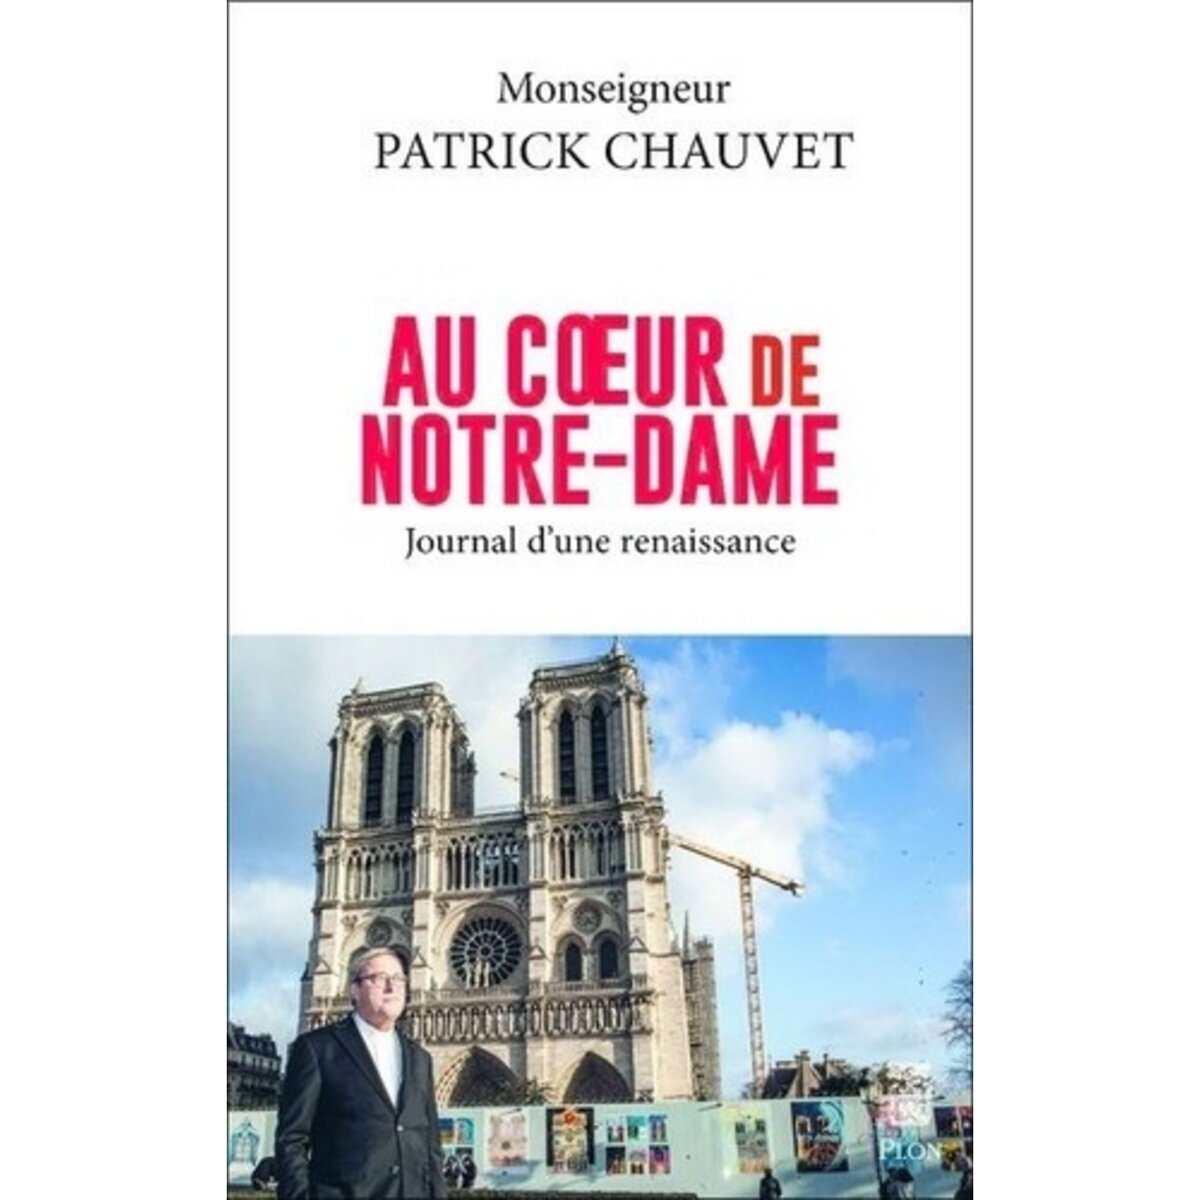  AU COEUR DE NOTRE-DAME. JOURNAL D'UNE RENAISSANCE, Chauvet Patrick